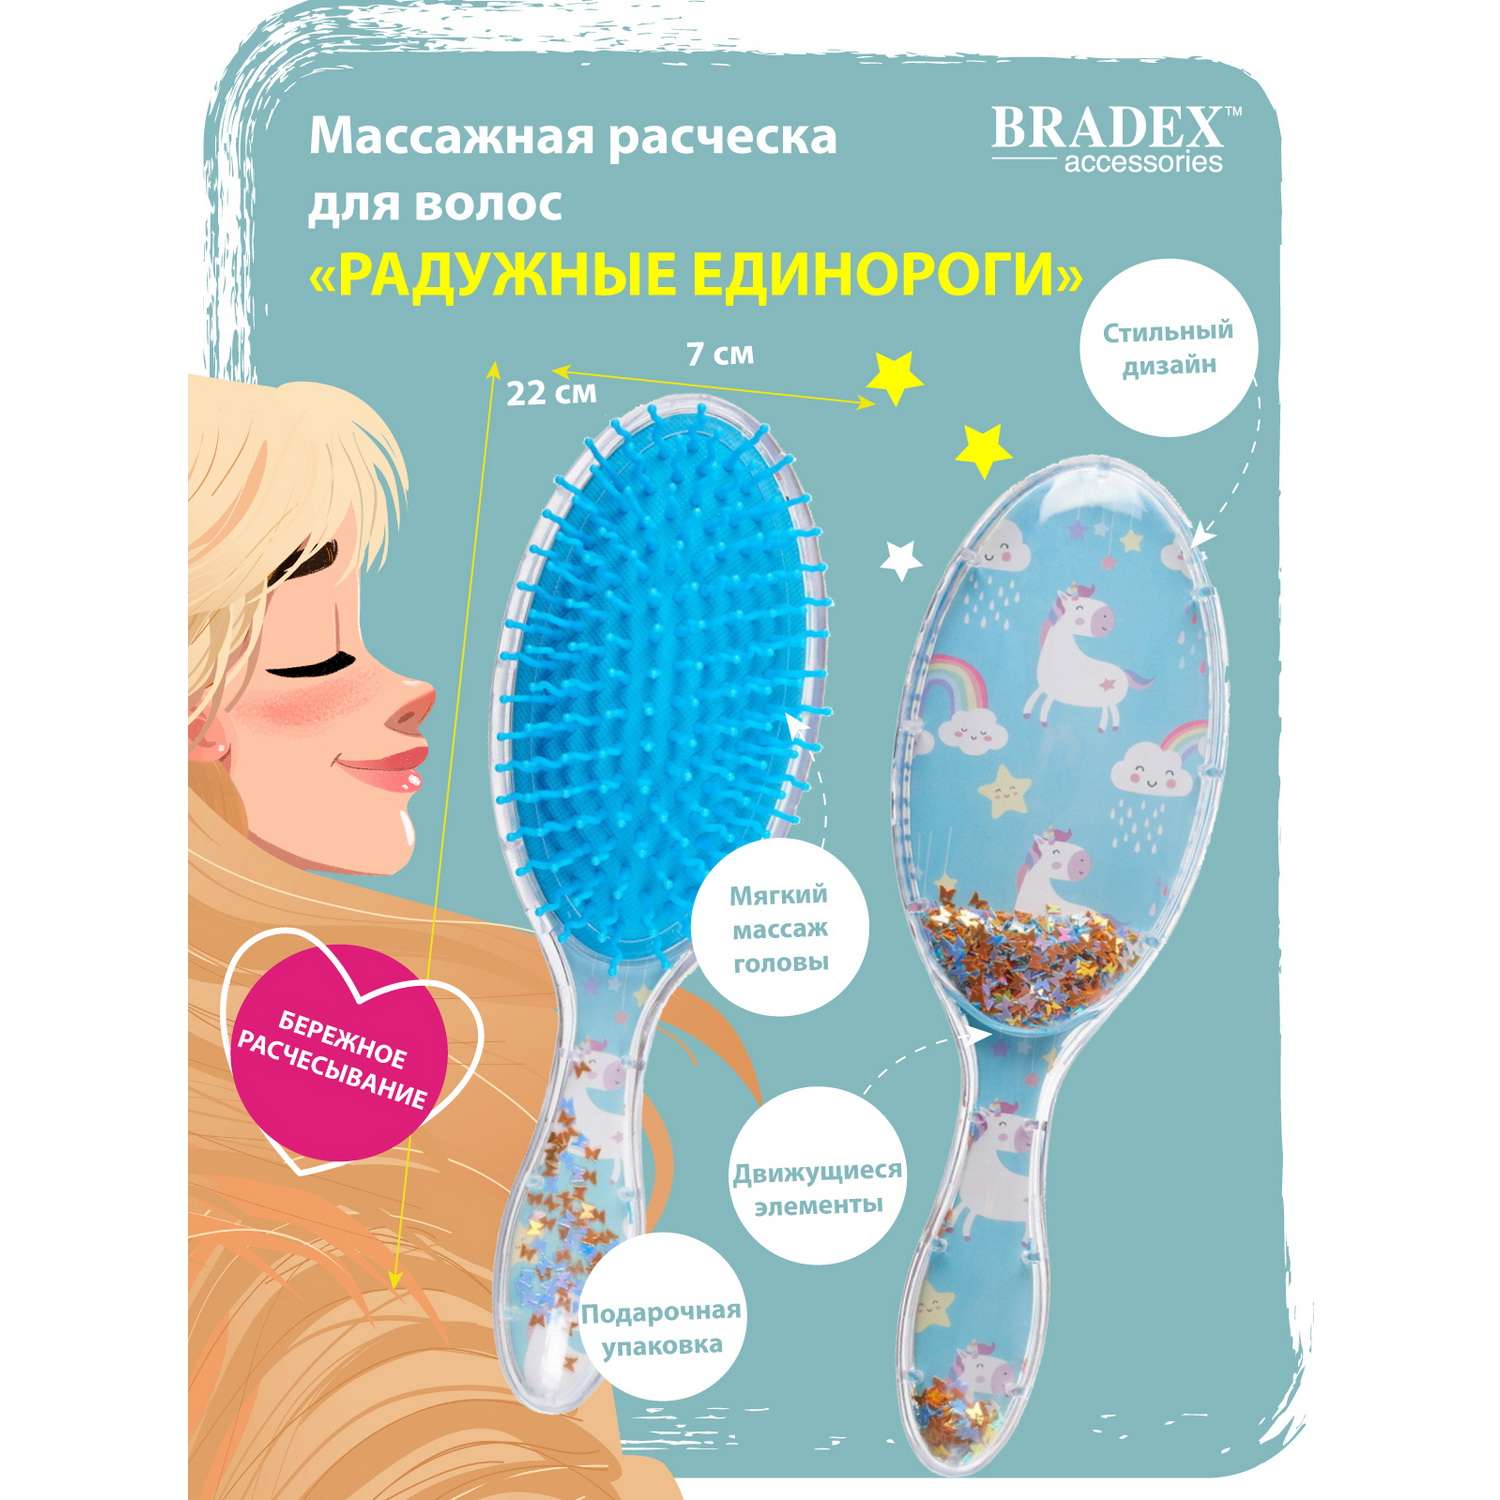 Расческа для волос Bradex массажная Радужные единороги - фото 7